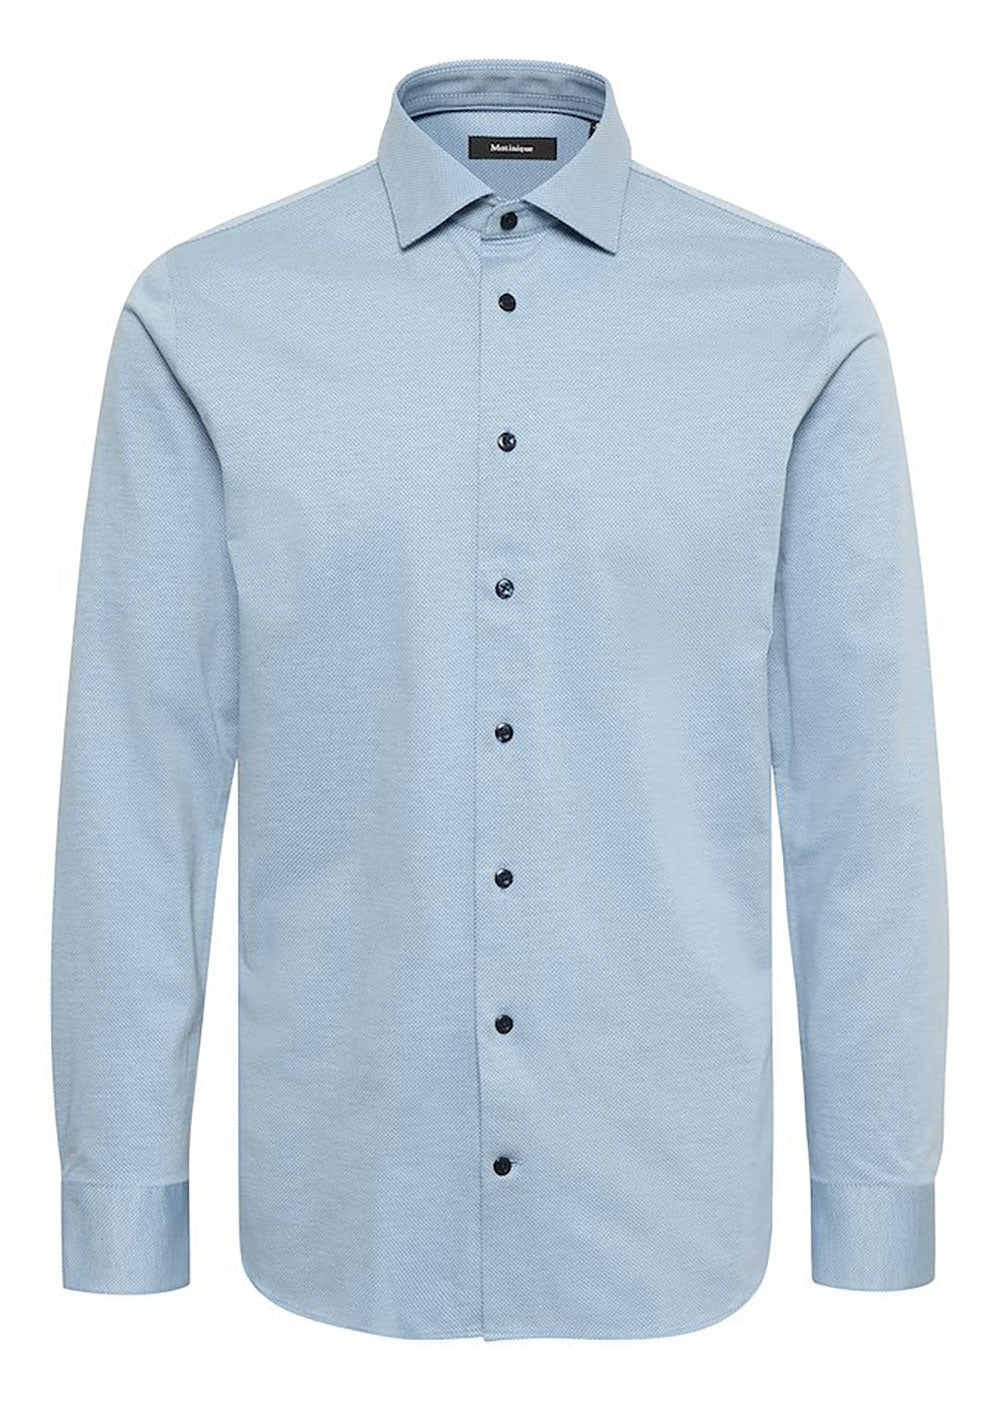 Marc Long Sleeve Shirt - Captain's Blue - Matinique - Danali - 30204077